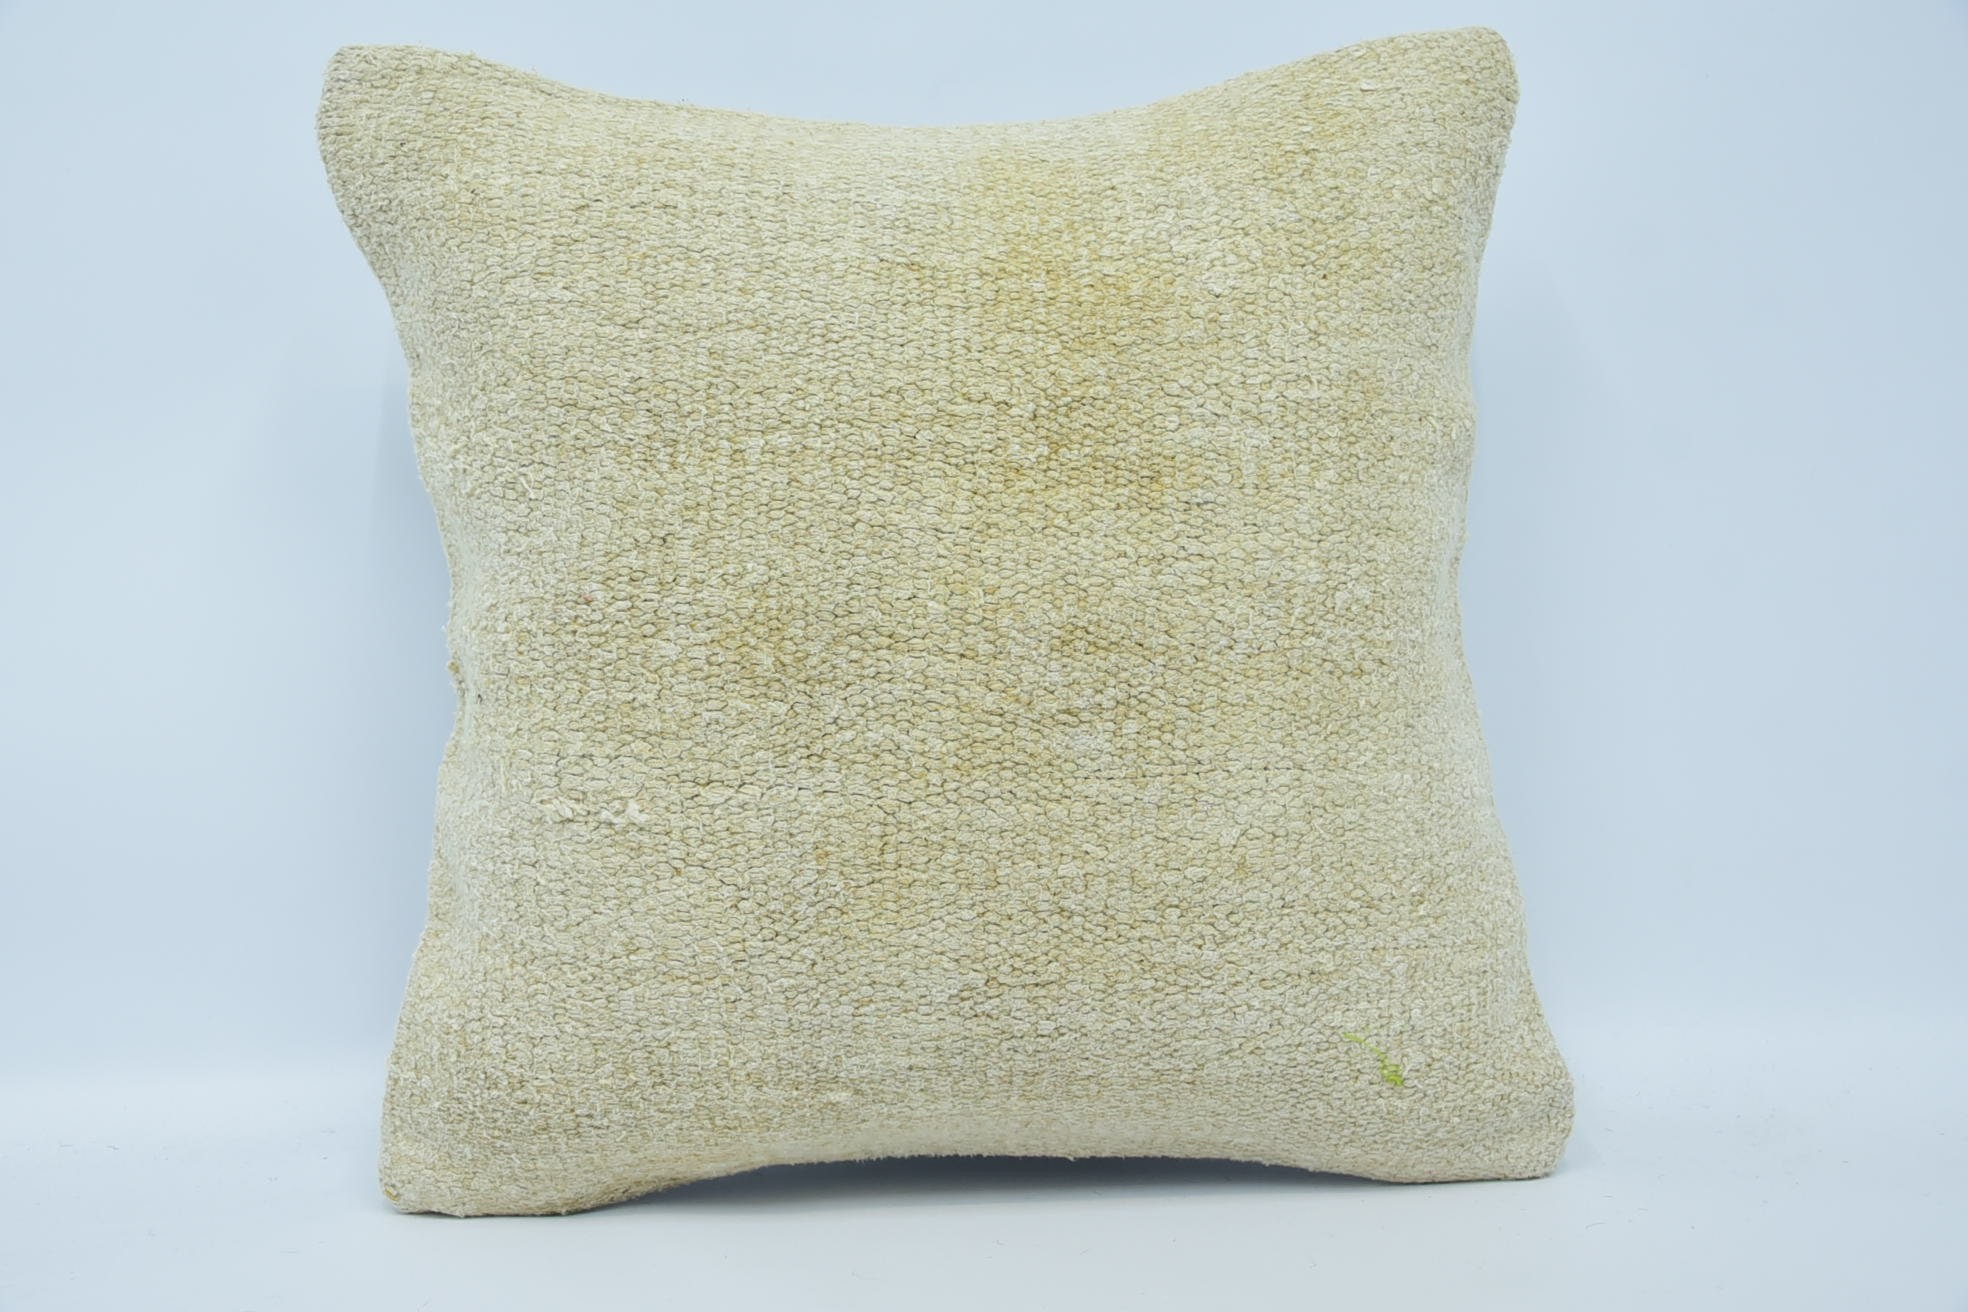 Handmade Pillow Sham, Interior Designer Pillow, Throw Kilim Pillow, Boho Pillow Sham Cover, 18"x18" Beige Cushion Cover